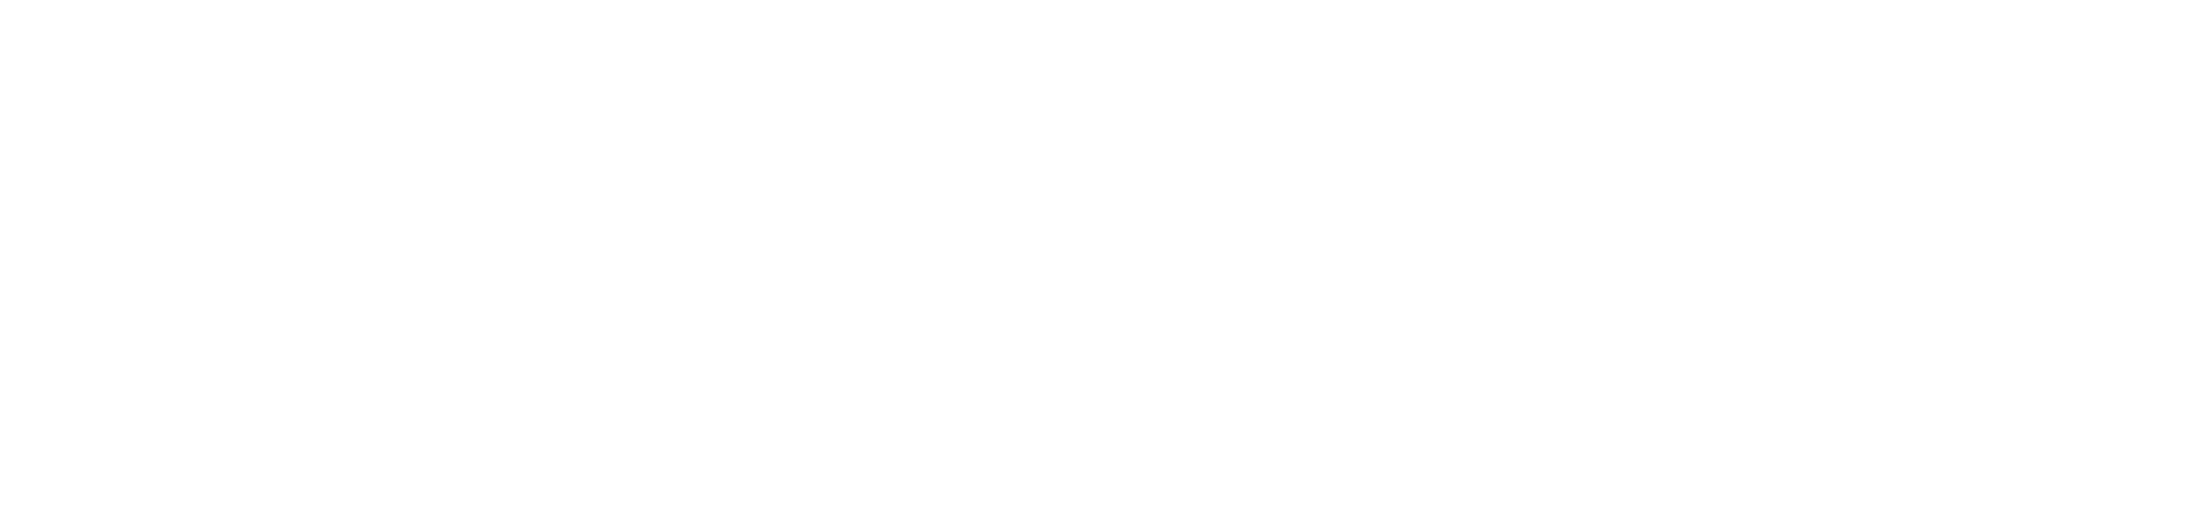 Logo_PortoSeguro_Novo_Branco